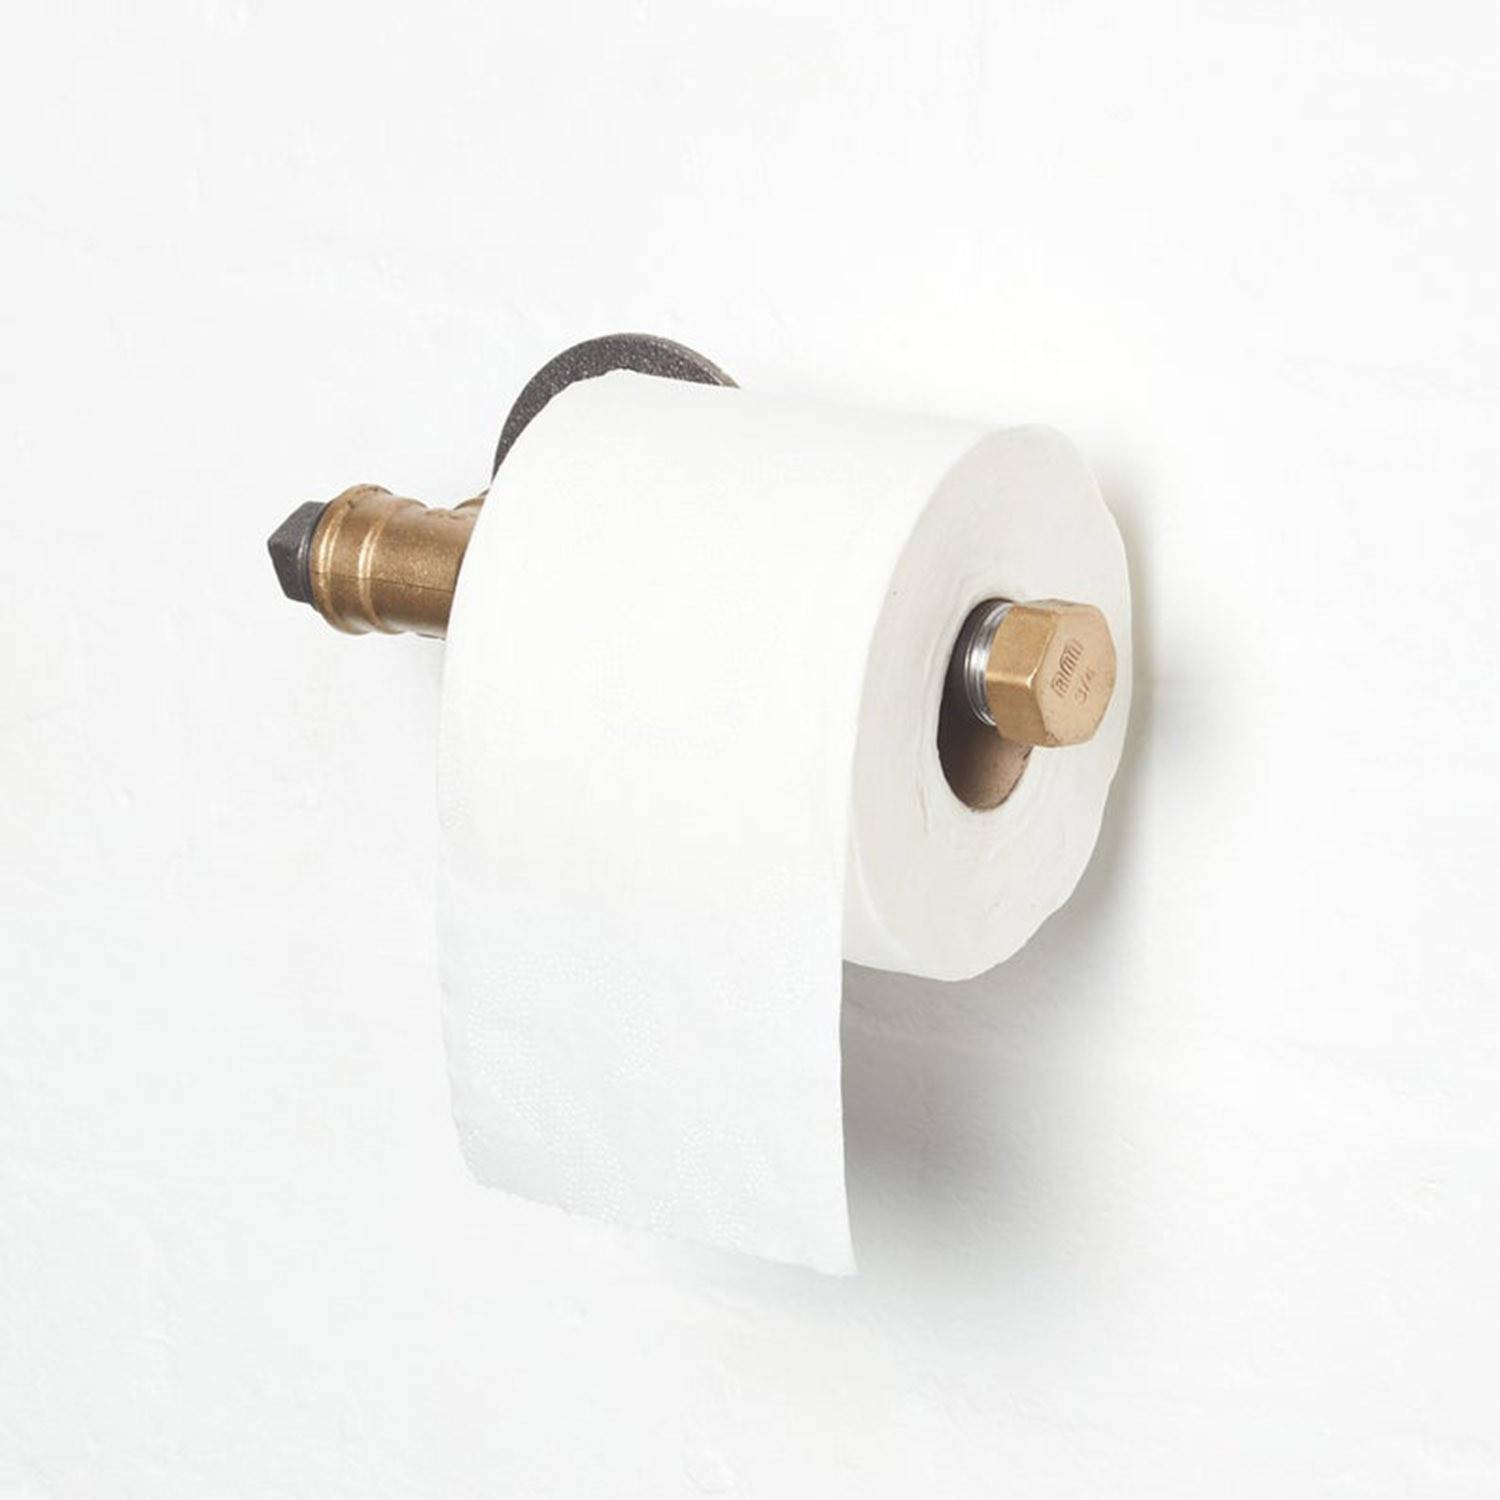 Porte-rouleau papier toilette, collection NEMOX brossé noir métal.